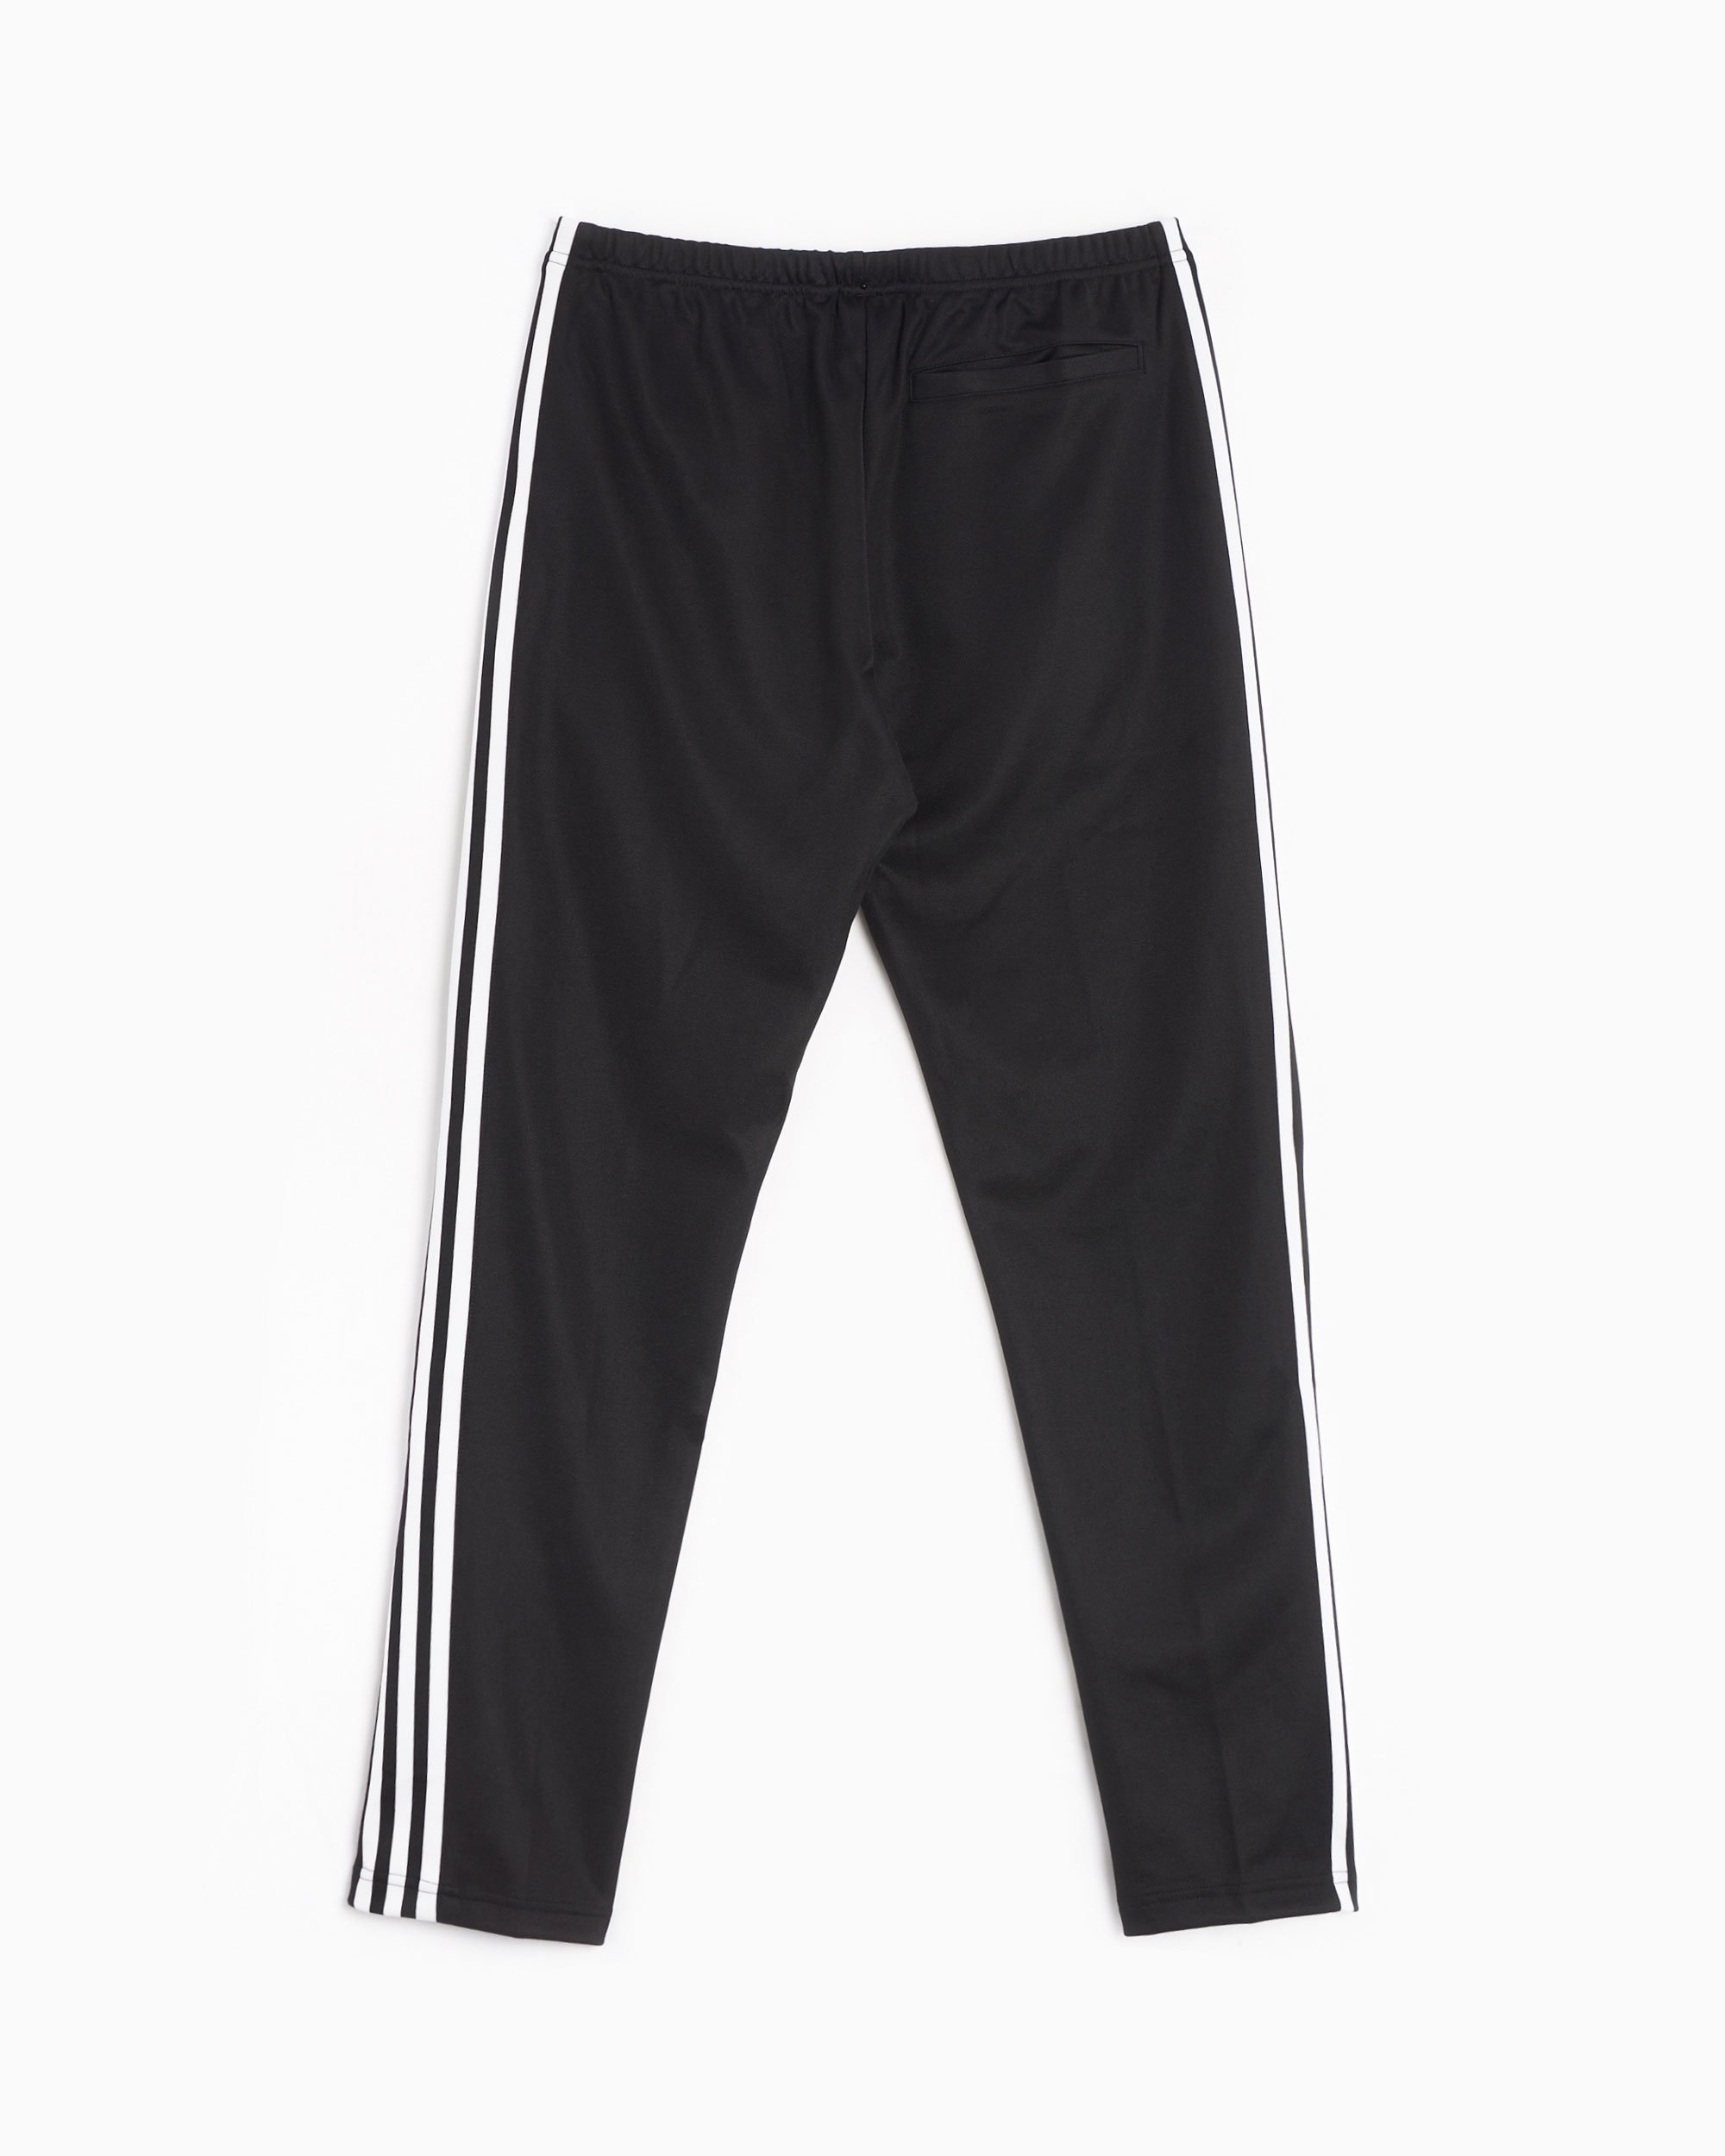 adidas Originals Beckenbauer Men's Track Pants Black II5764| Buy